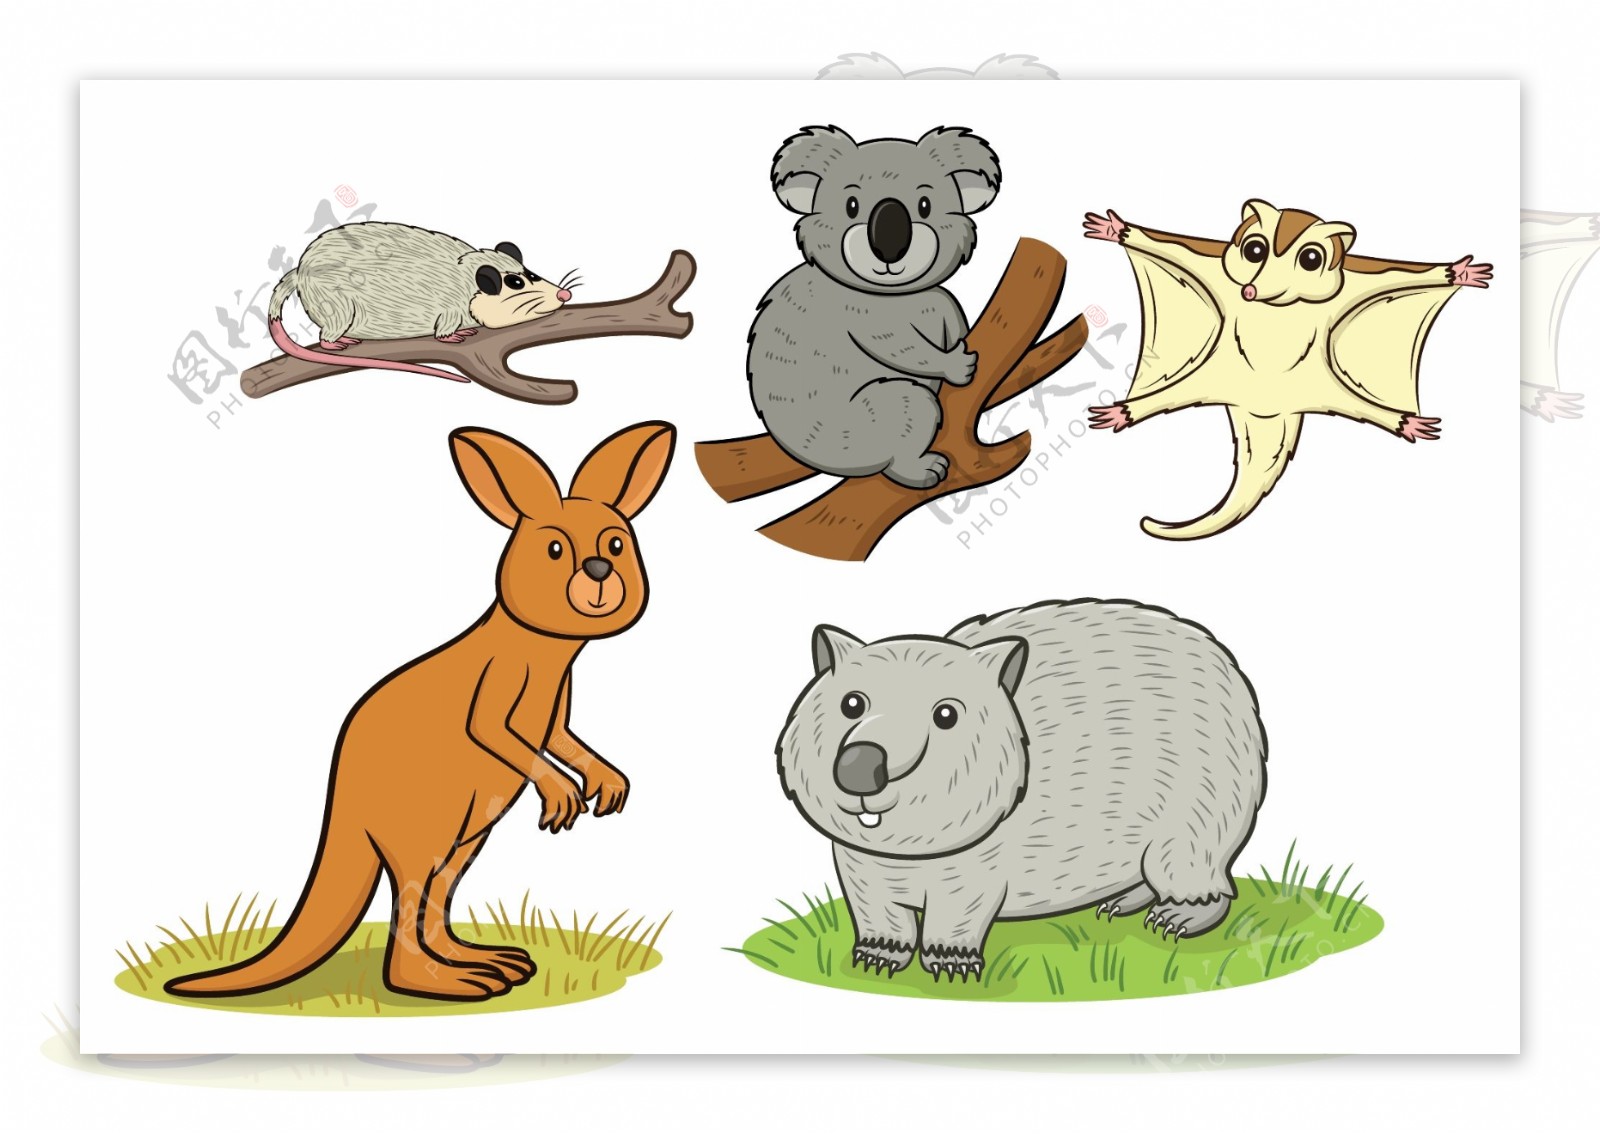 澳大利亚动物插图矢量素材